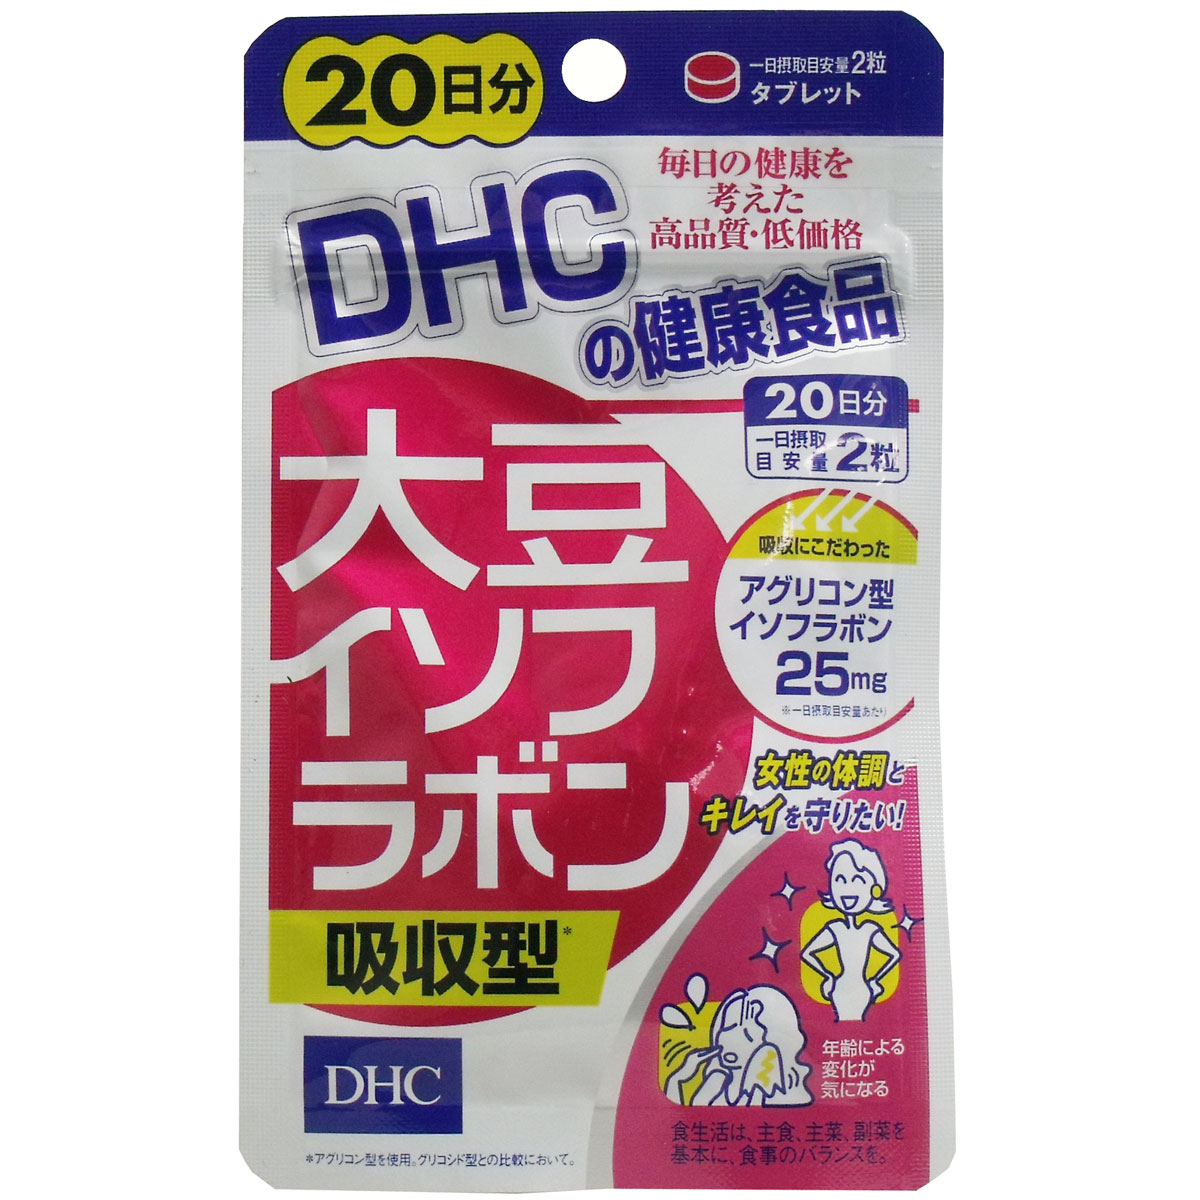 【送料無料】【5個セット】 DHC 大豆イソフラボン吸収型 20日分 40粒入 【dhc 大豆イソフラボン】【大豆イソフラボン サプリ】